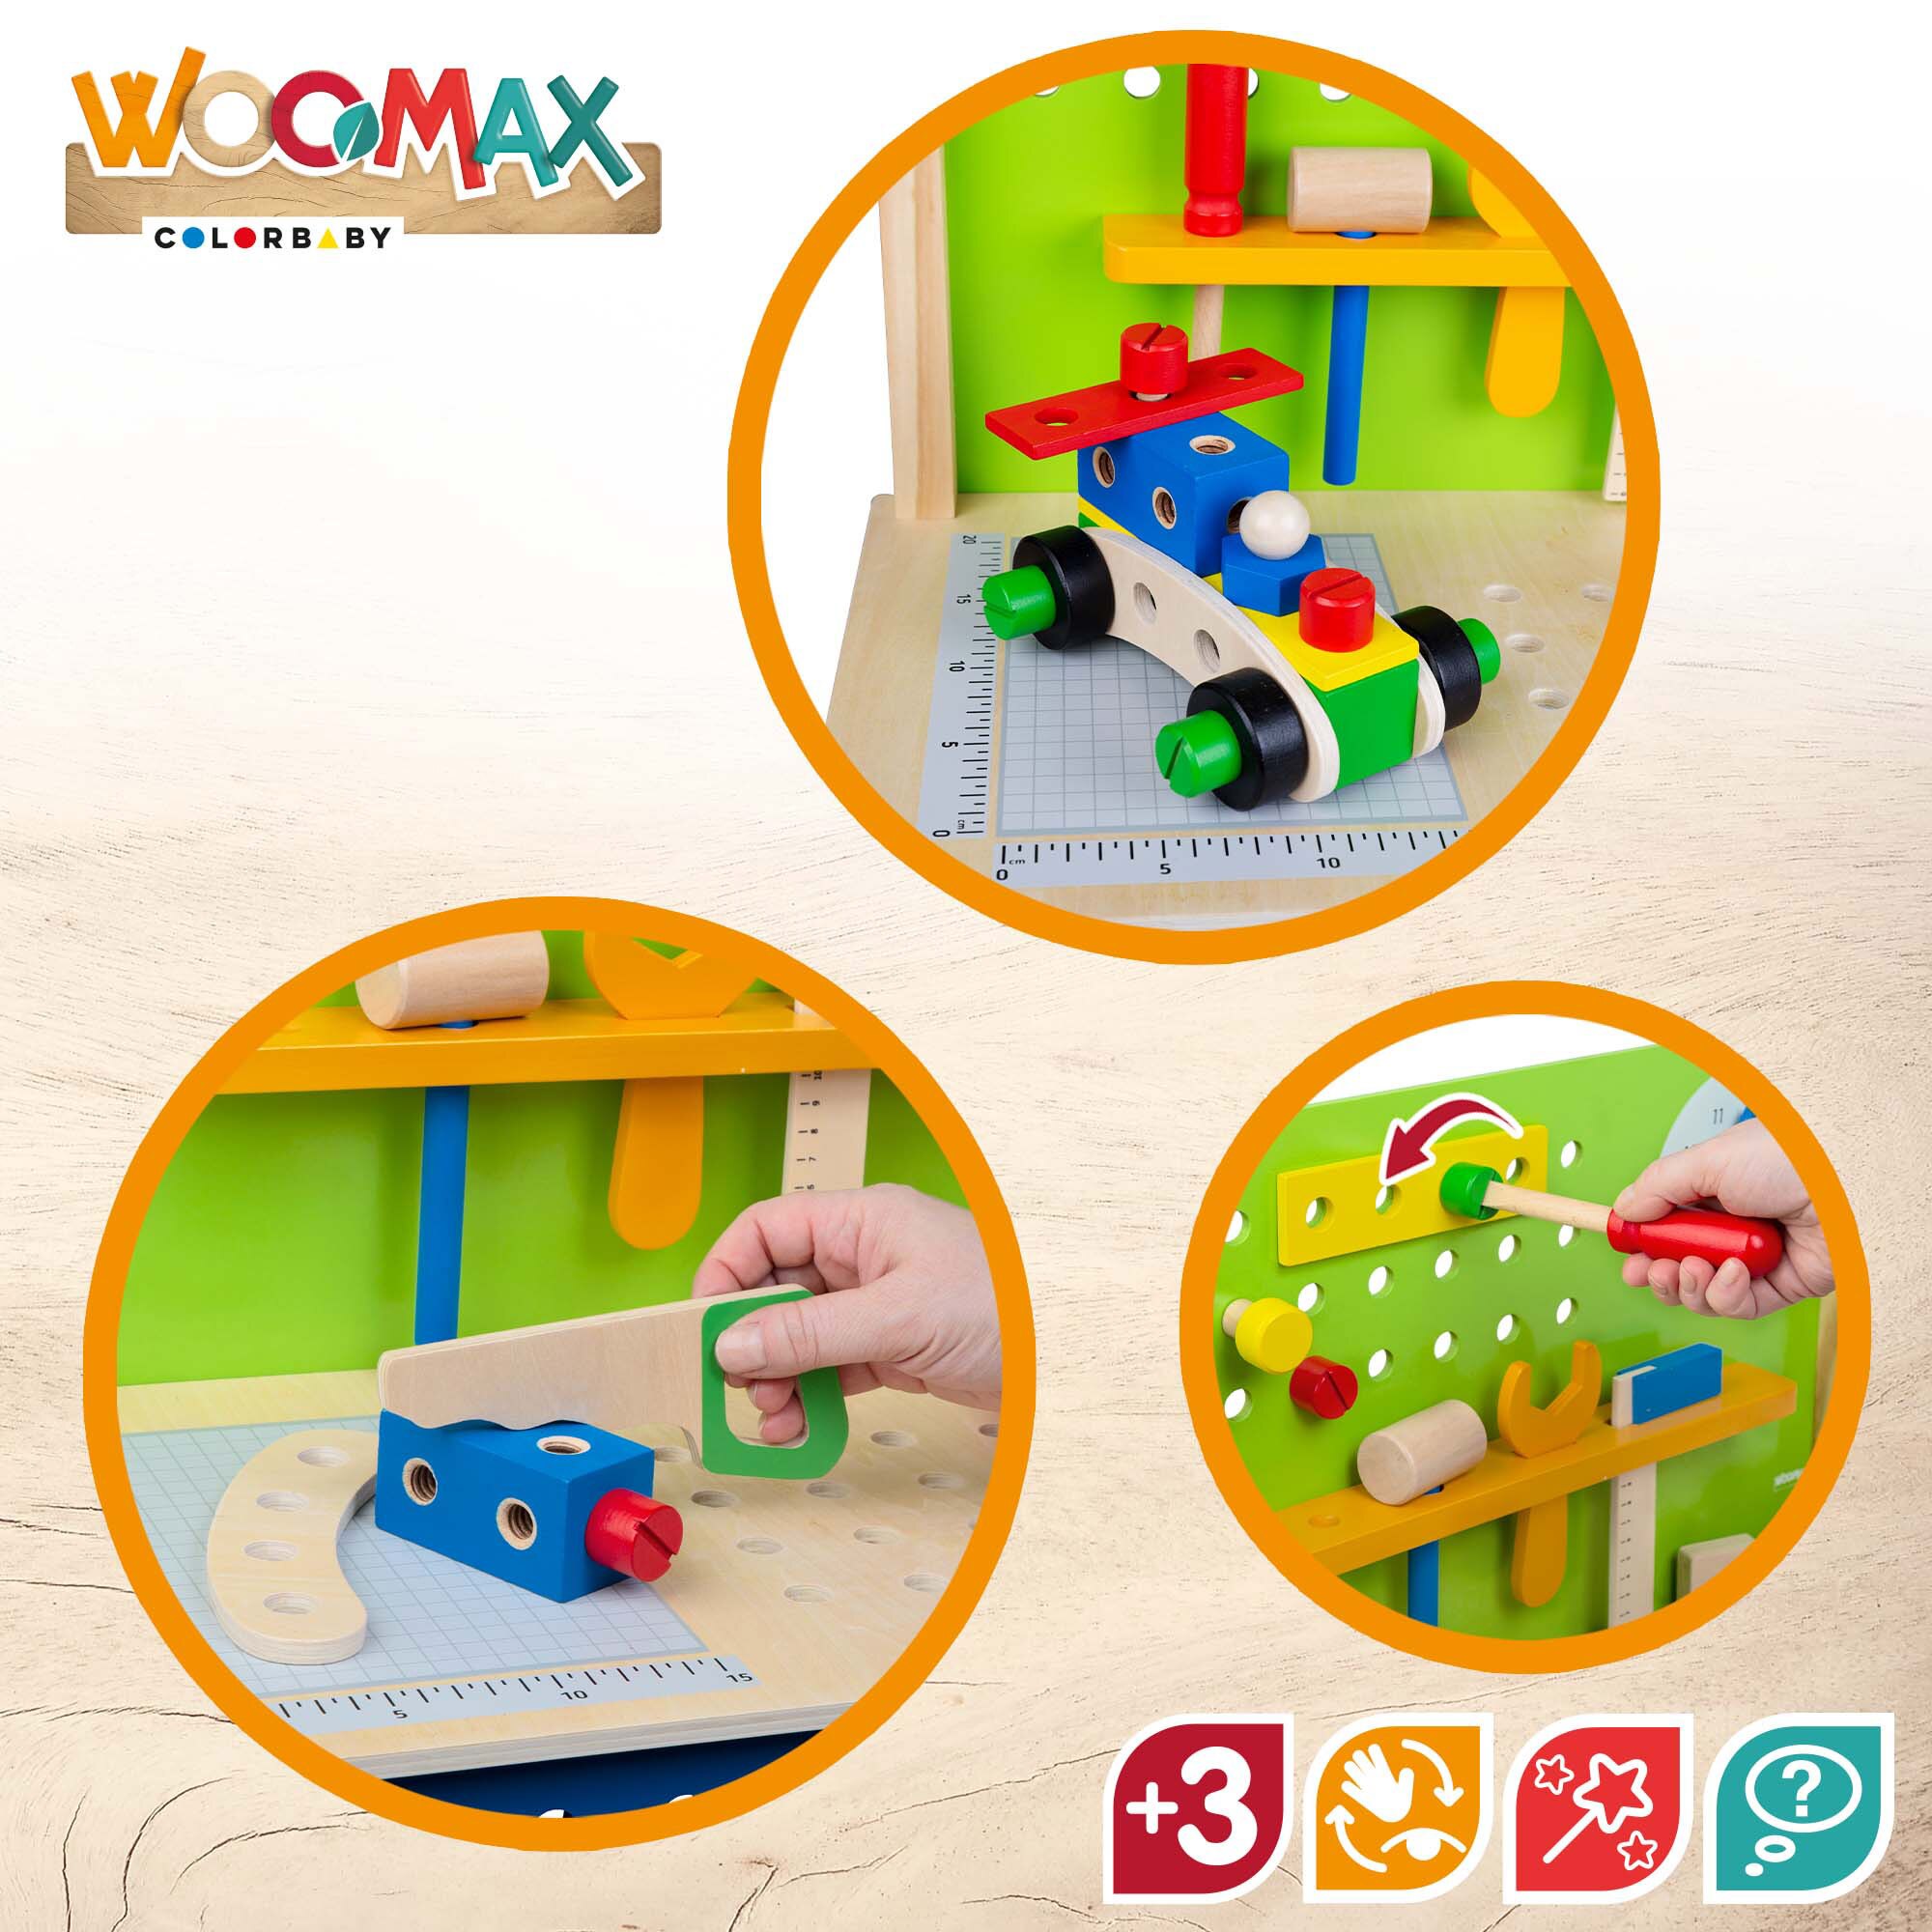 Banco herramientas juguete de madera WOOMAX, Herramientas juguete, Atornillador juguete, Juego de herramientas, Herramientas para niños, Herramientas juguete niños, Juguetes de madera, Herramientas niño 3 años